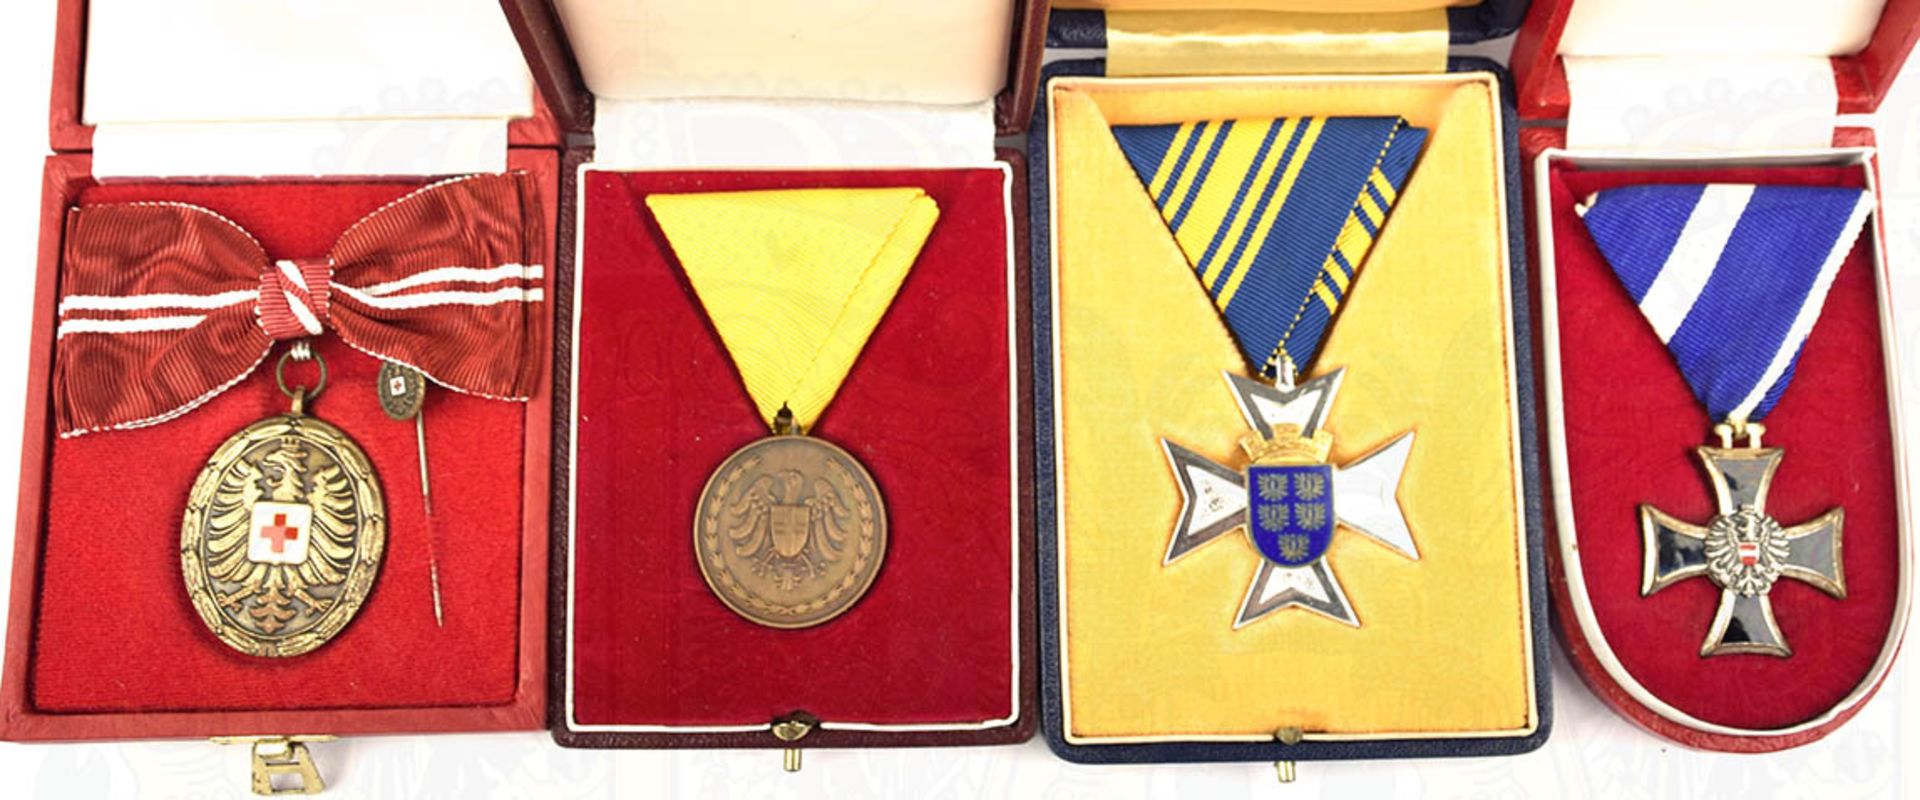 4 EHRENZEICHEN: Wehrdienstzeichen 2. Klasse; Silbernes Ehrenzeichen für Verdienste um